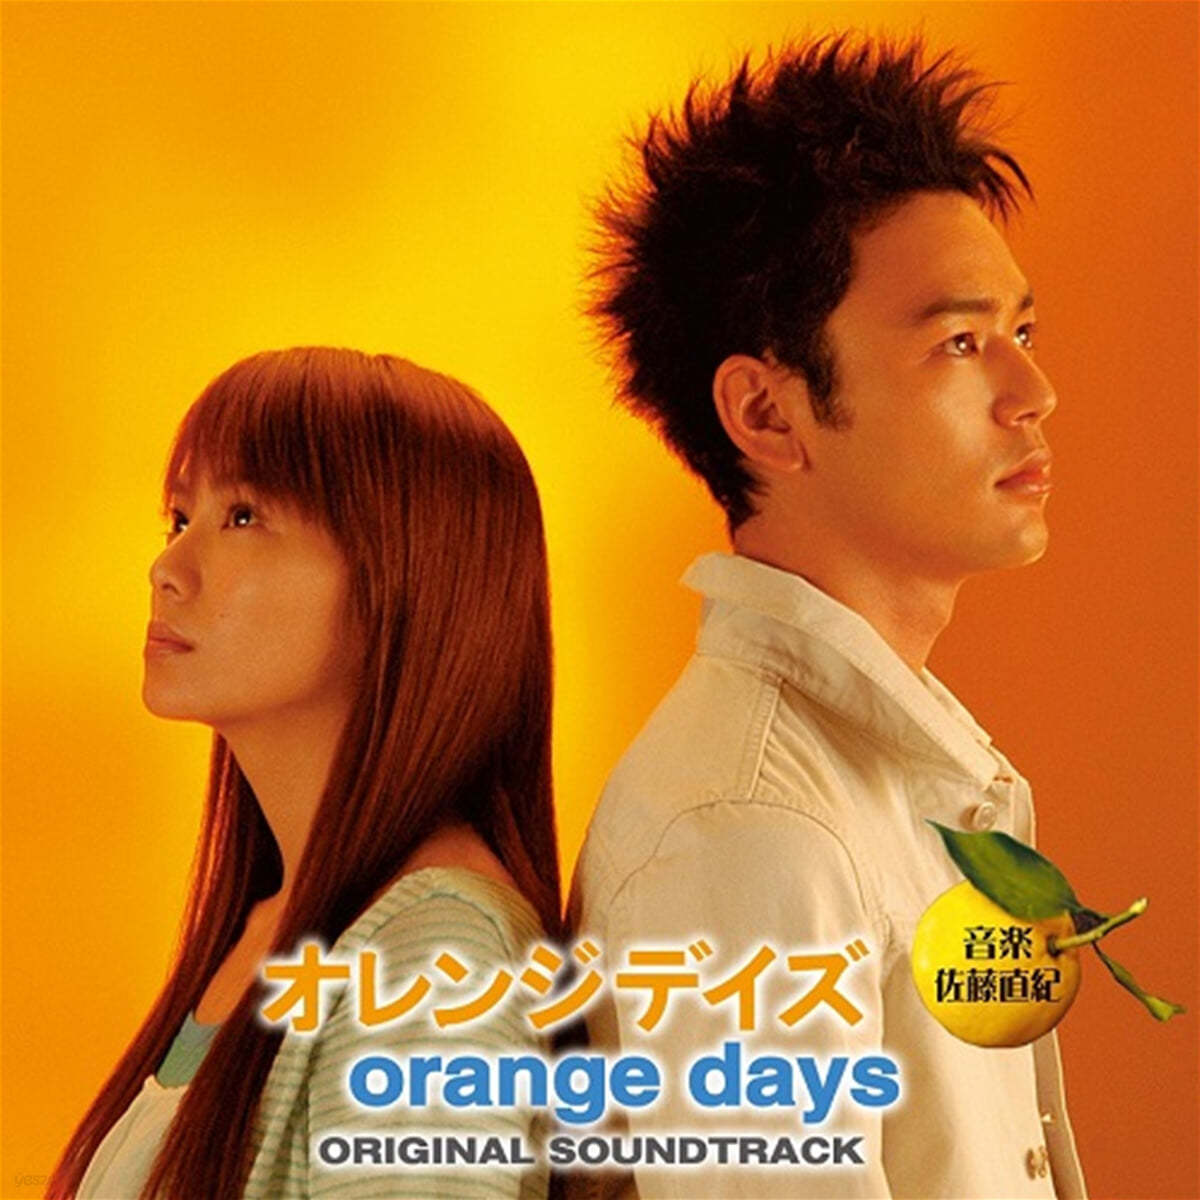 오렌지 데이즈 드라마음악 (Orange Days OST by Sato Naoki) [LP]